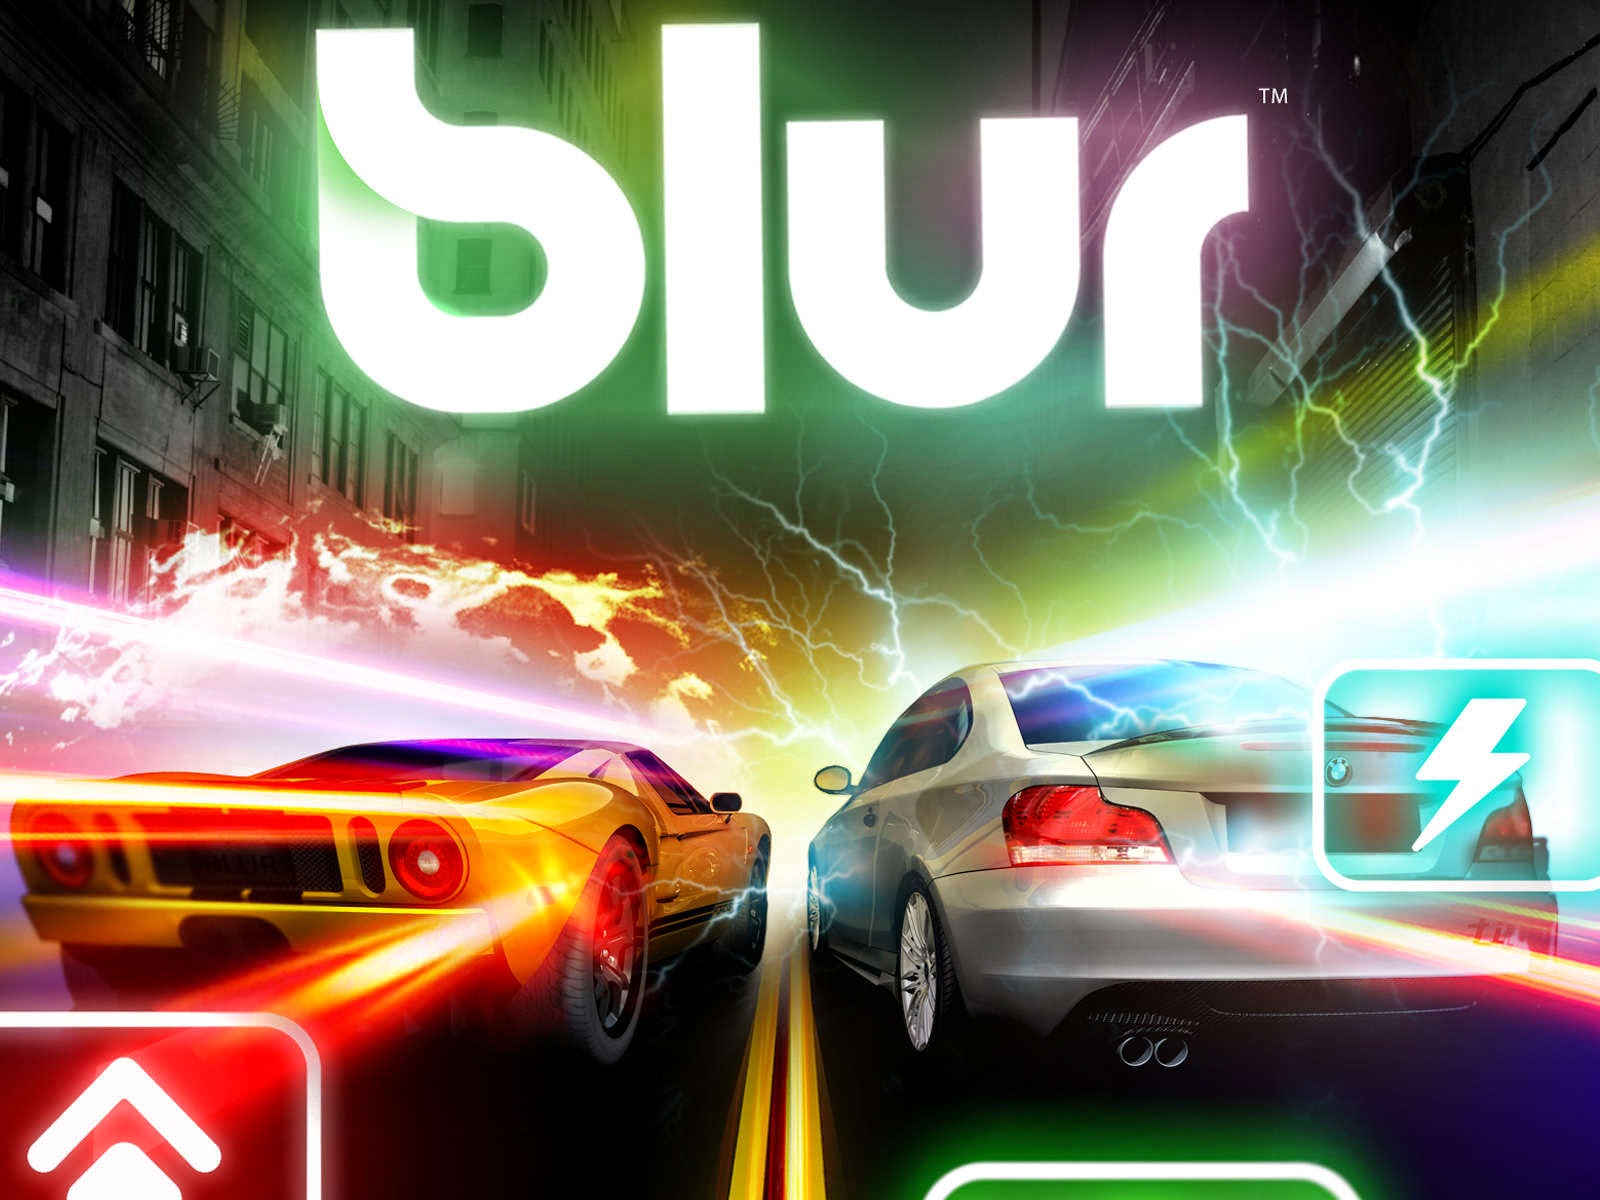 Blur PC Racing Game Free Download